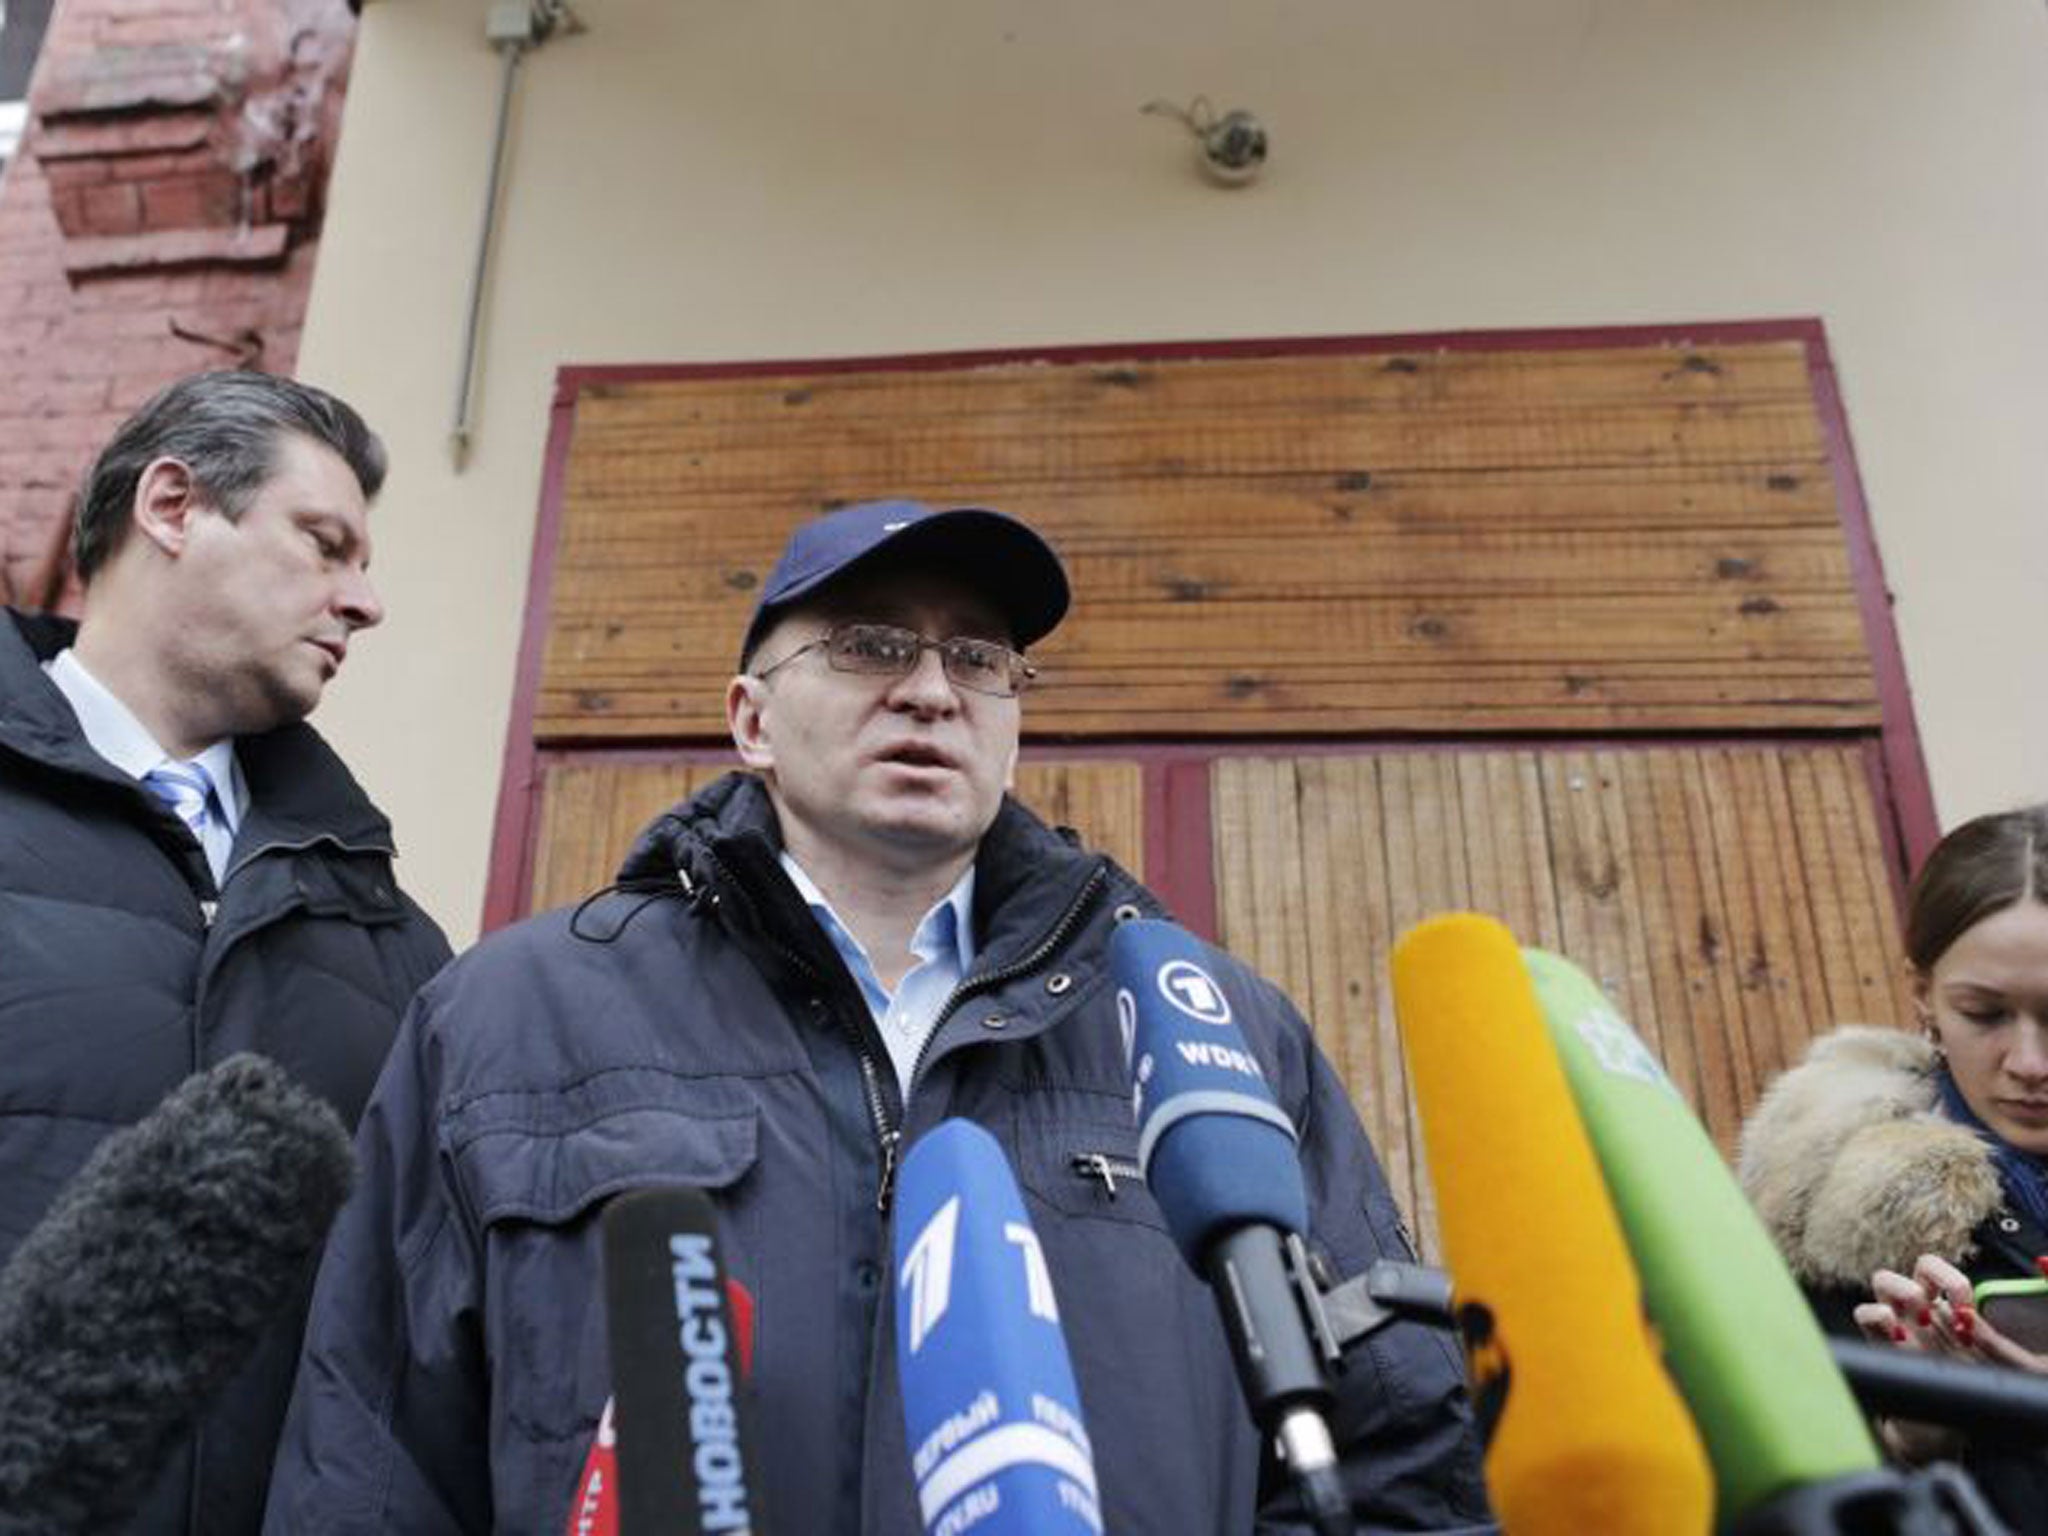 Dmitry Kratov outside court yesterday